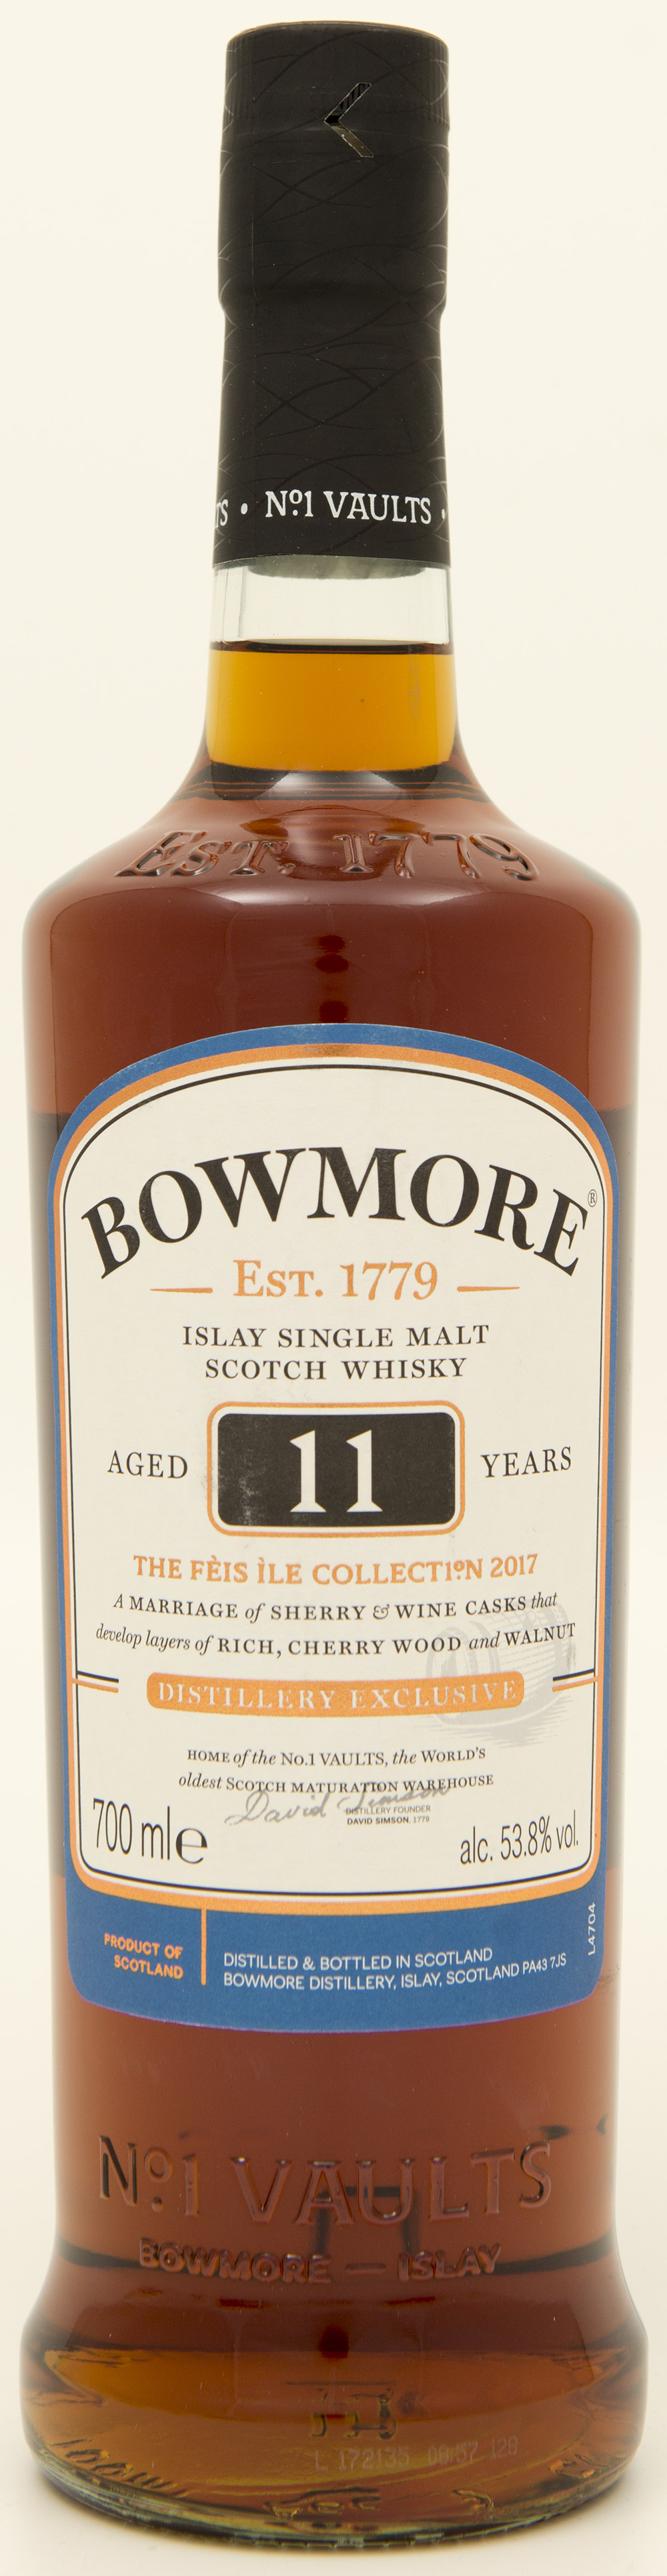 Billede: DSC_3217 - Bowmore 11 - Feis Isle 2017 - bottle front.jpg